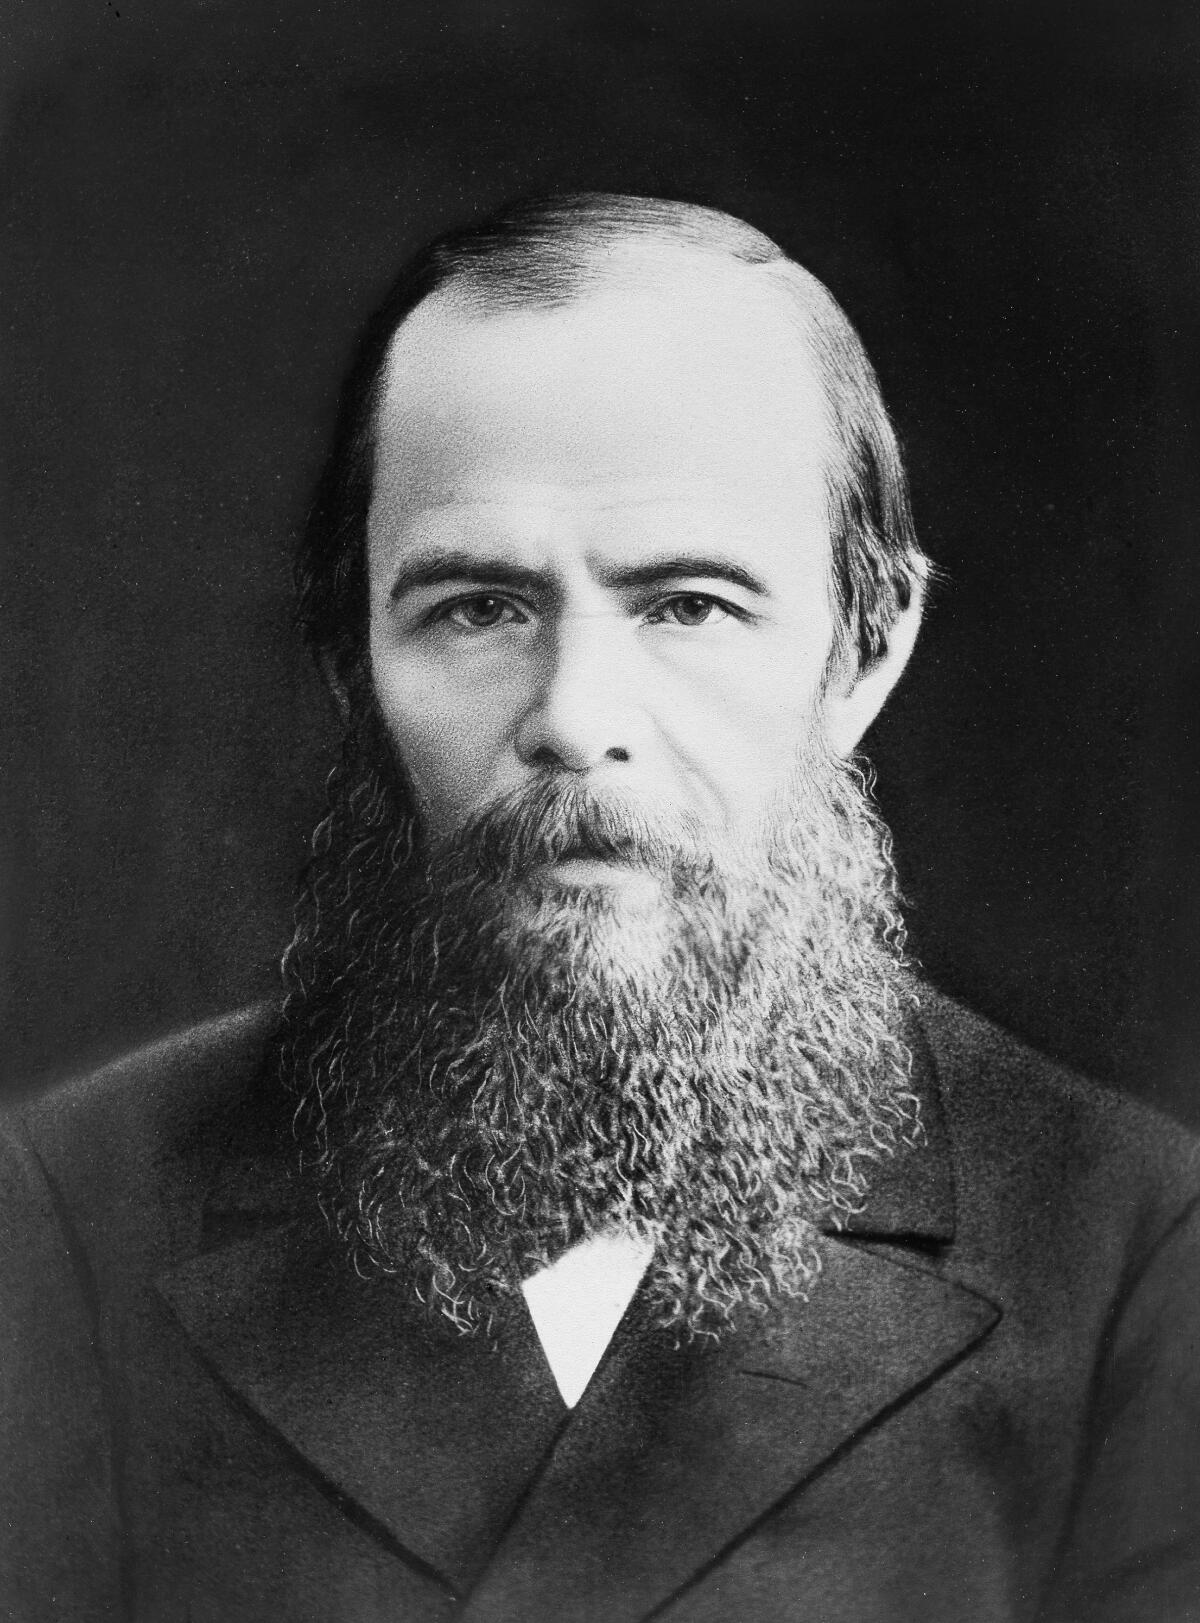 A man with a long beard.